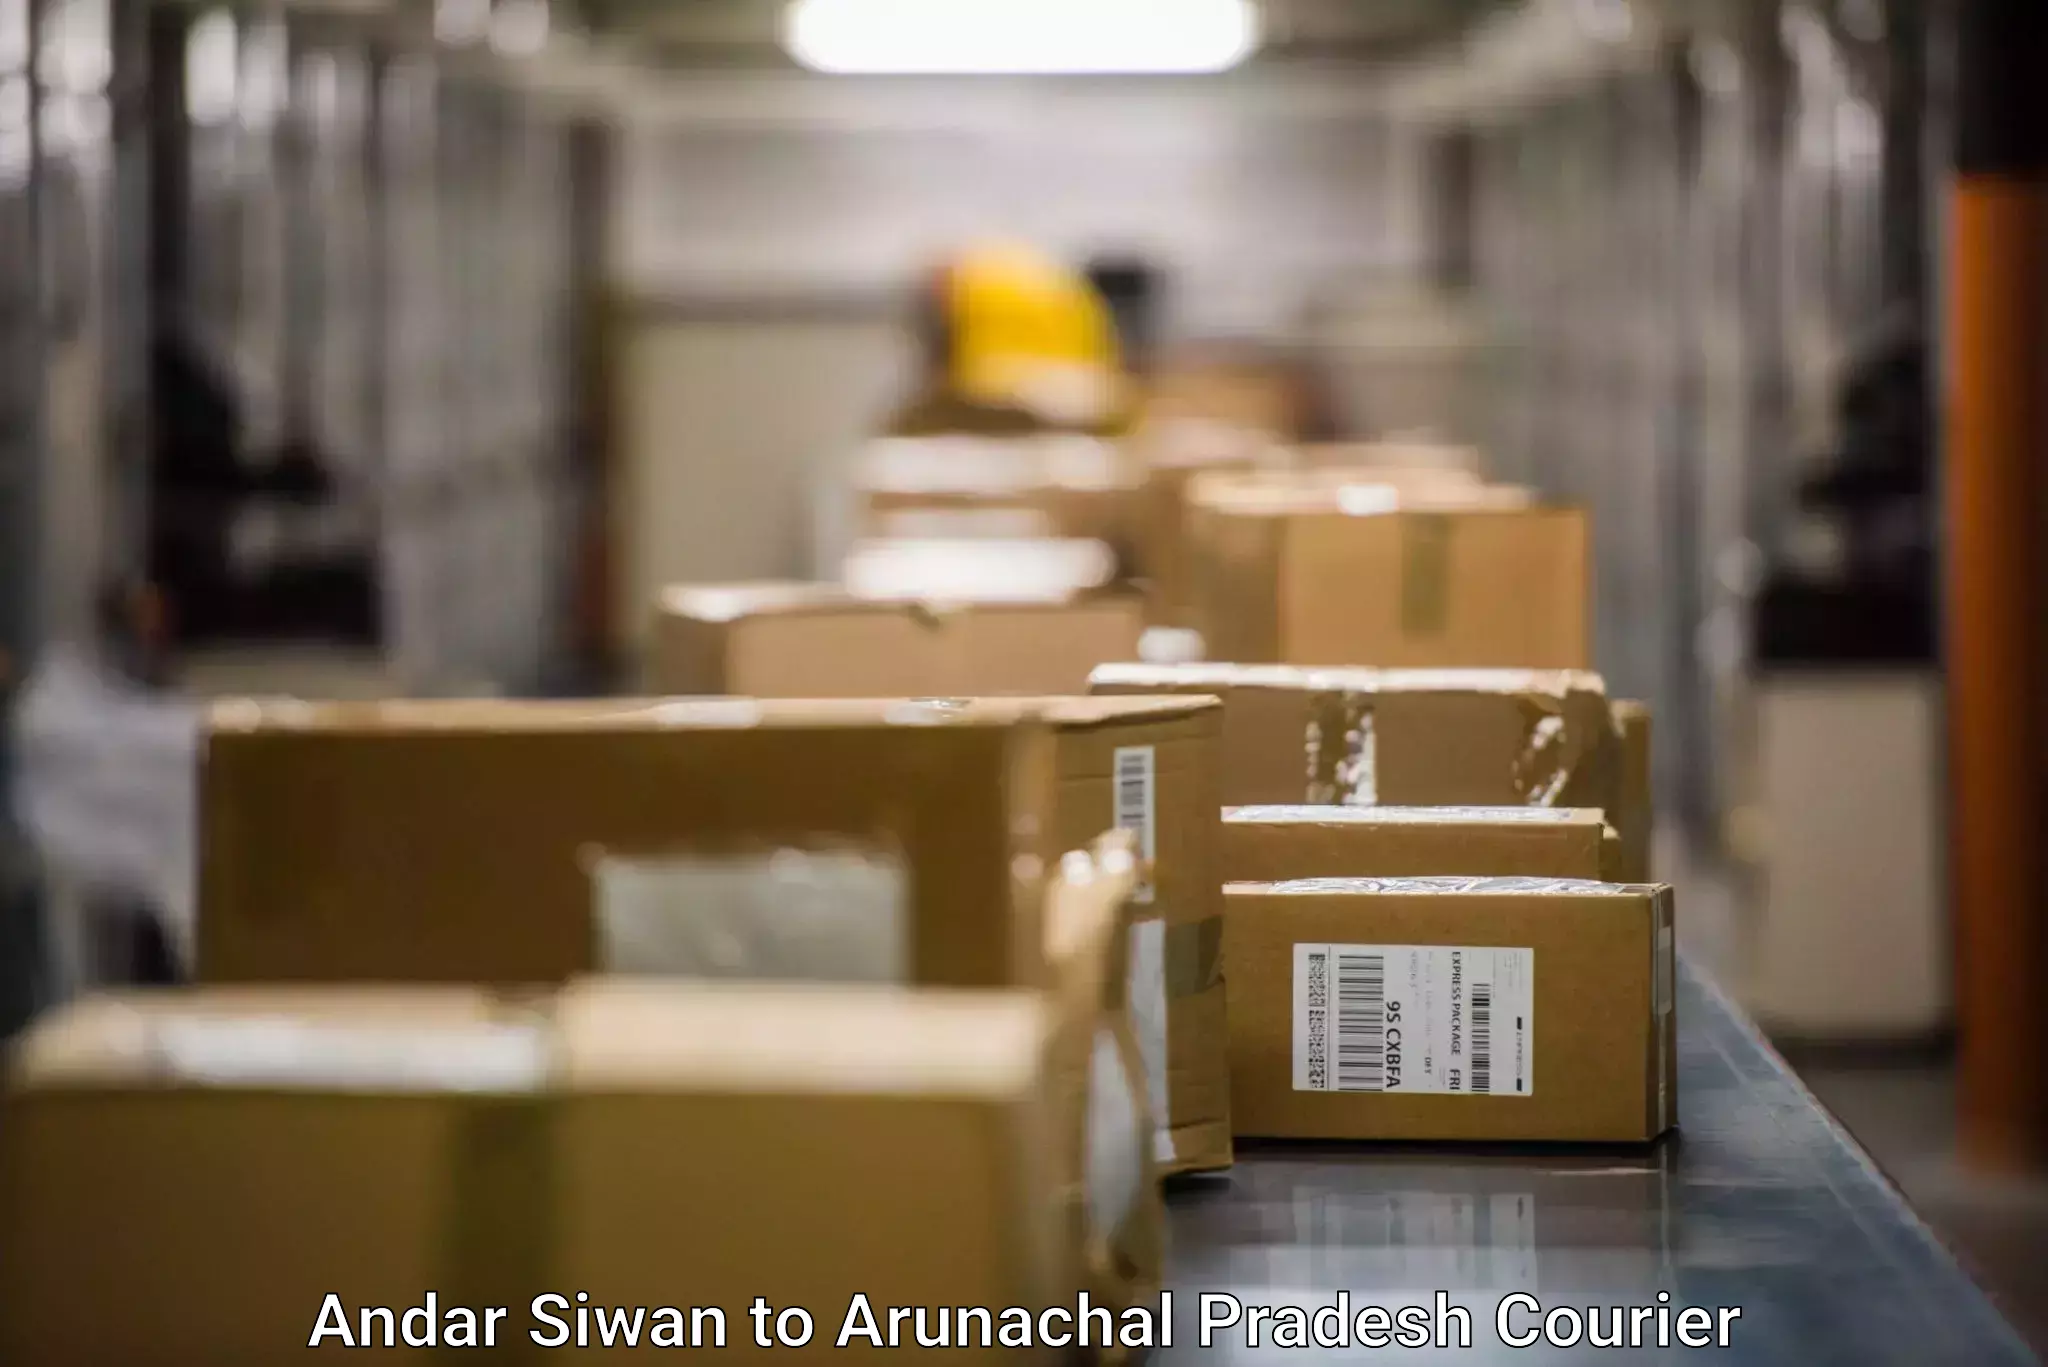 Custom courier packaging in Andar Siwan to Lower Dibang Valley